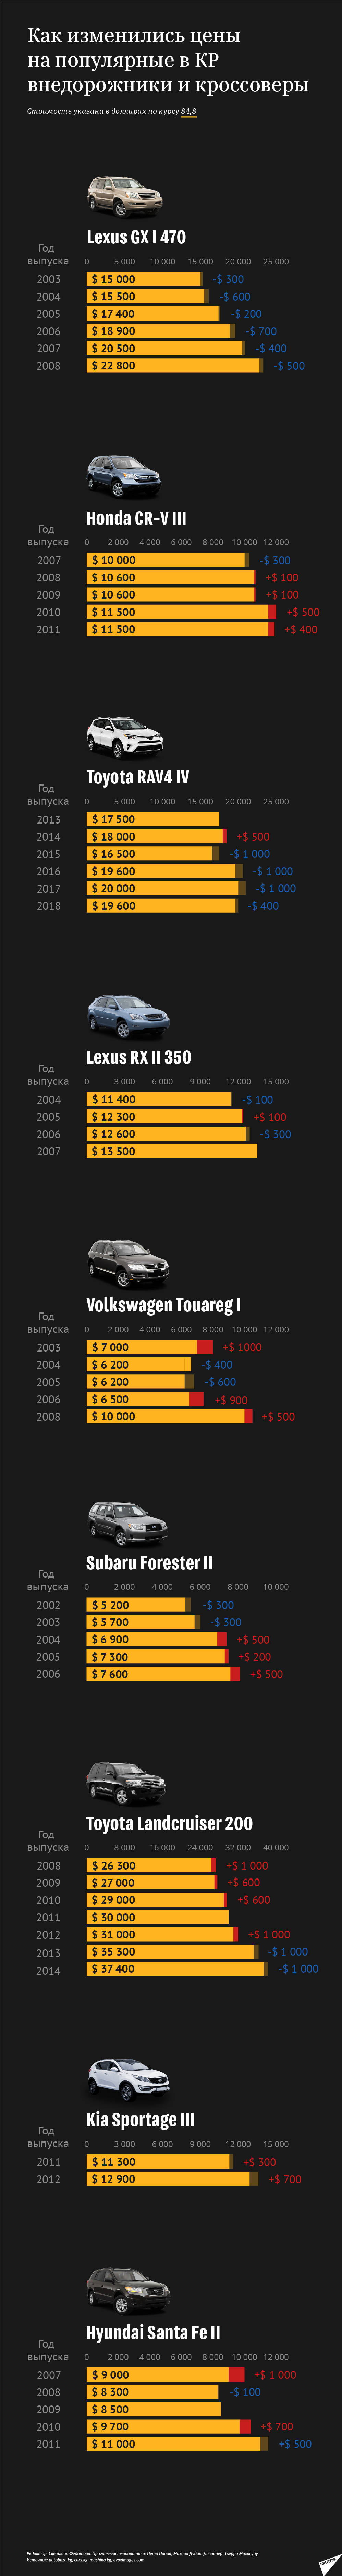 Что происходит в Кыргызстане на рынке авто — инфографика